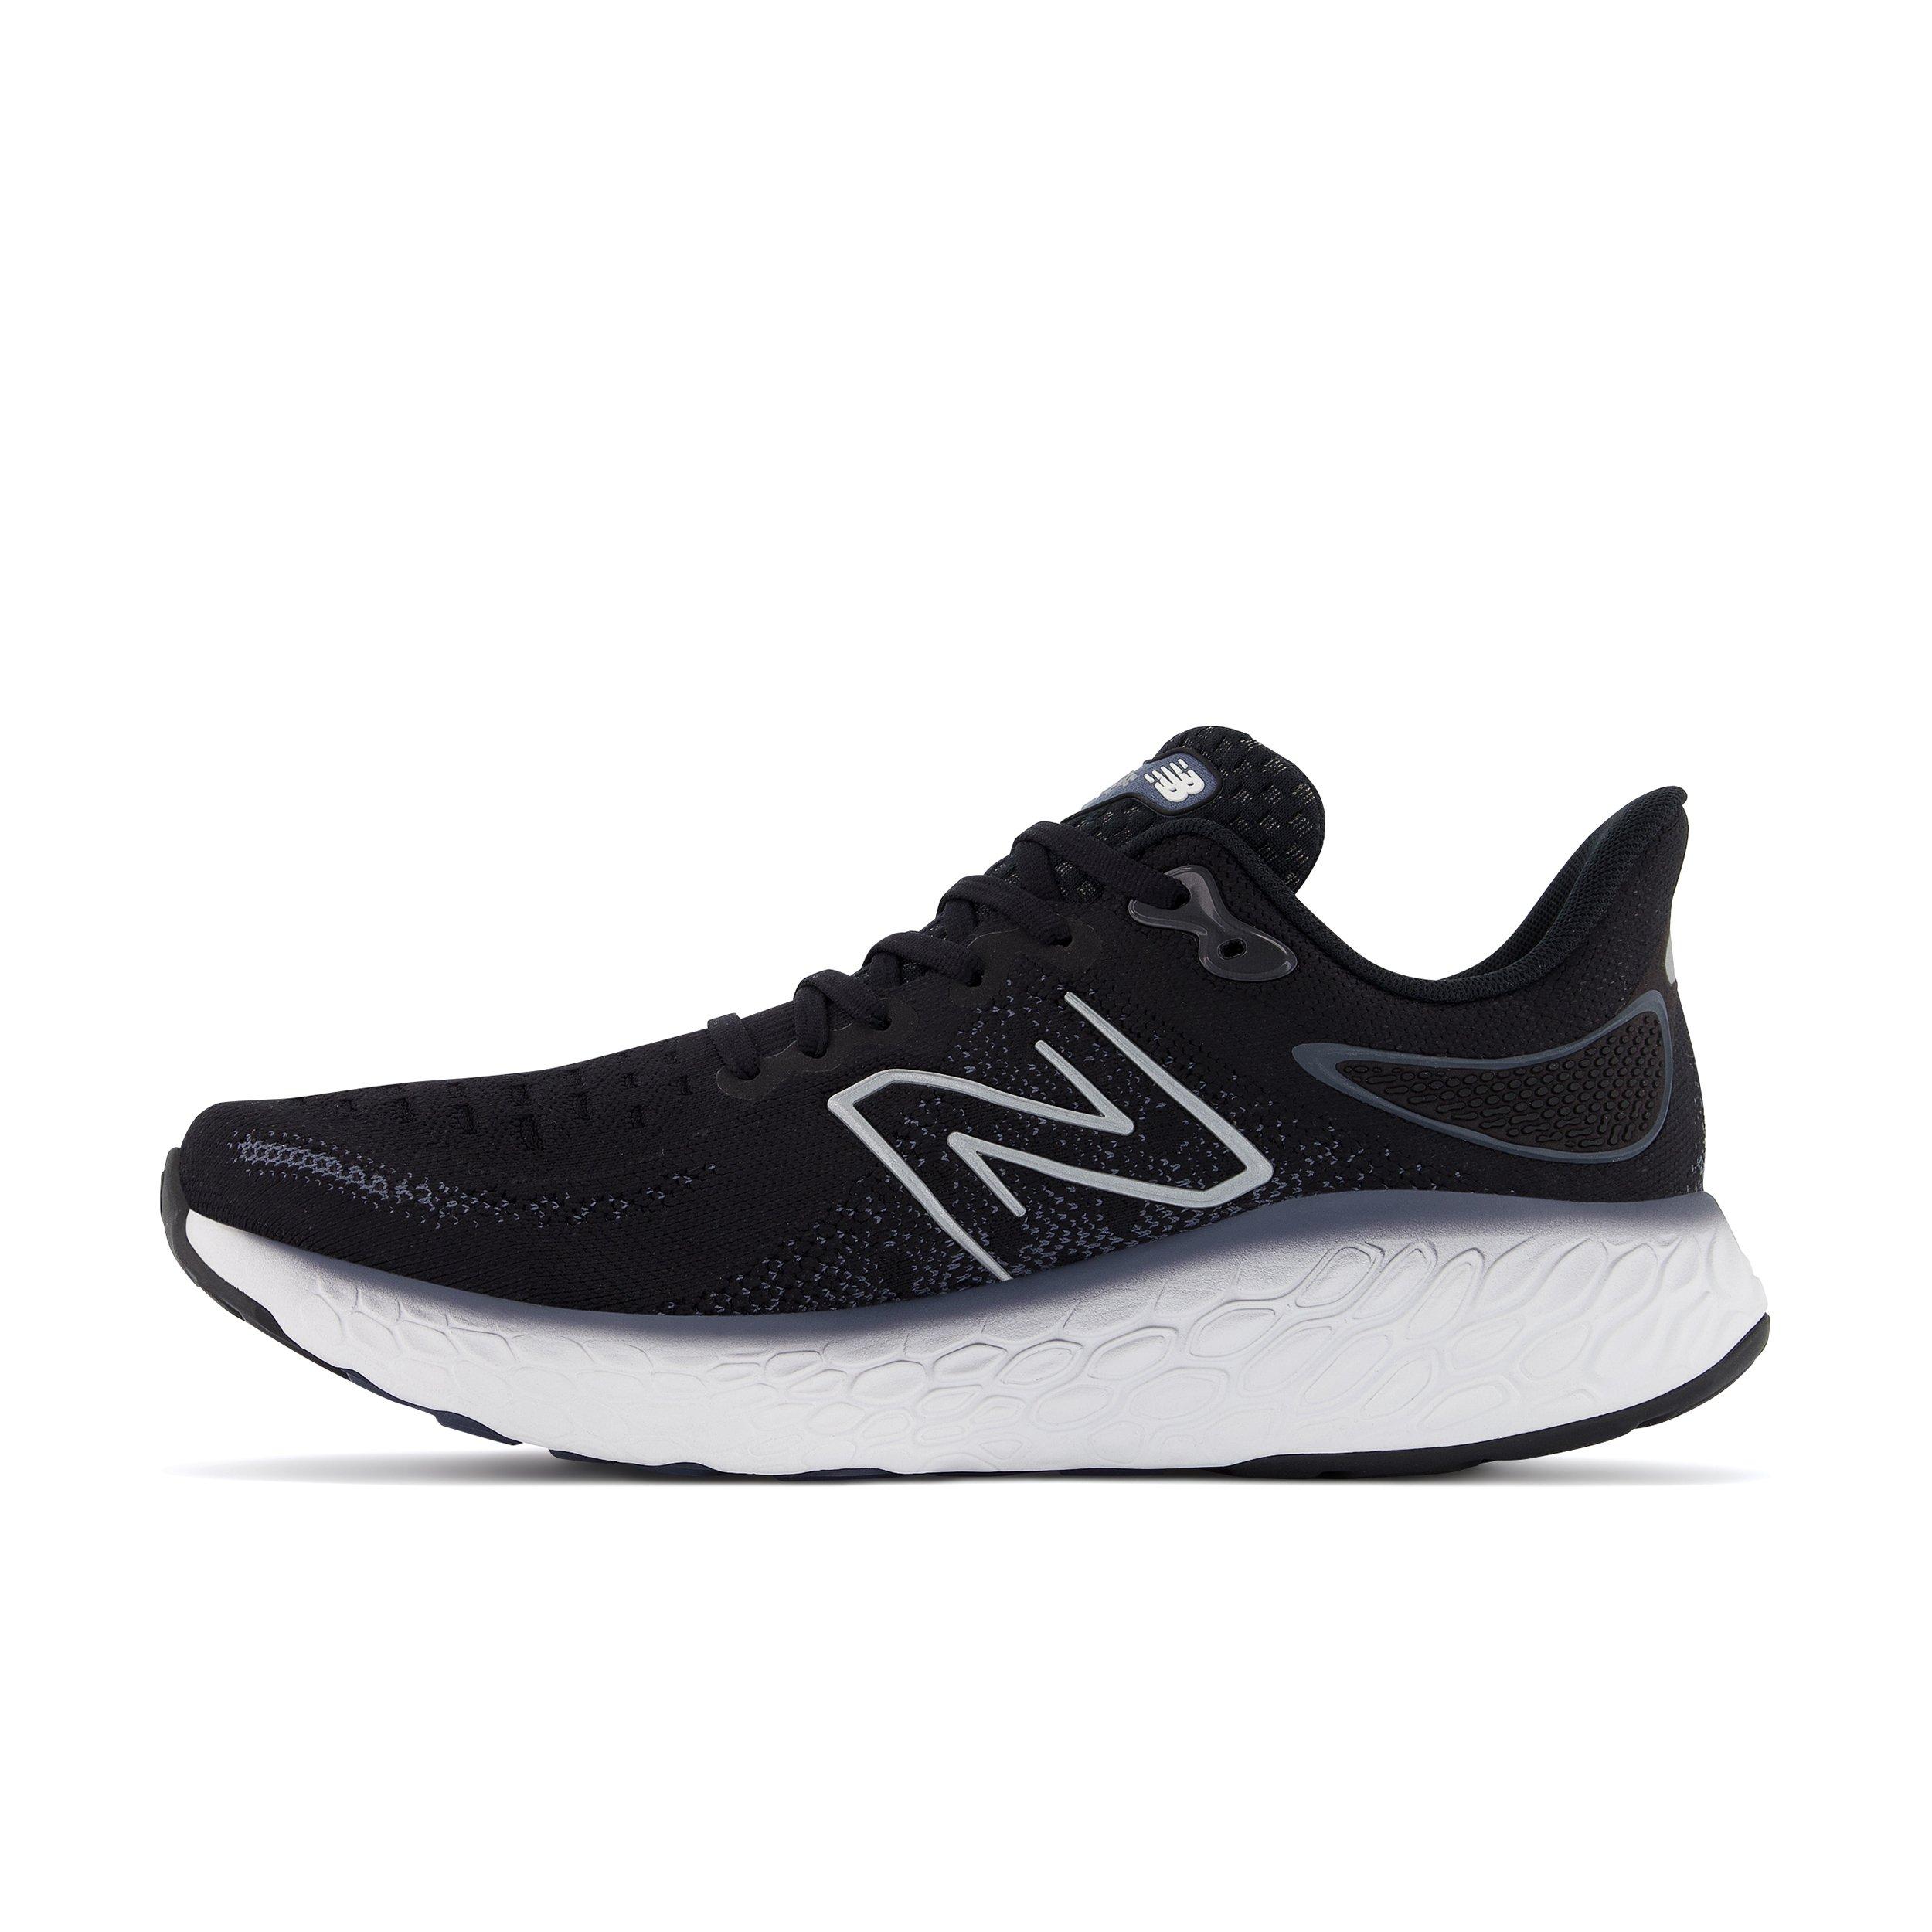 New Balance Foam v12 "Black/White" Men's Running Shoe